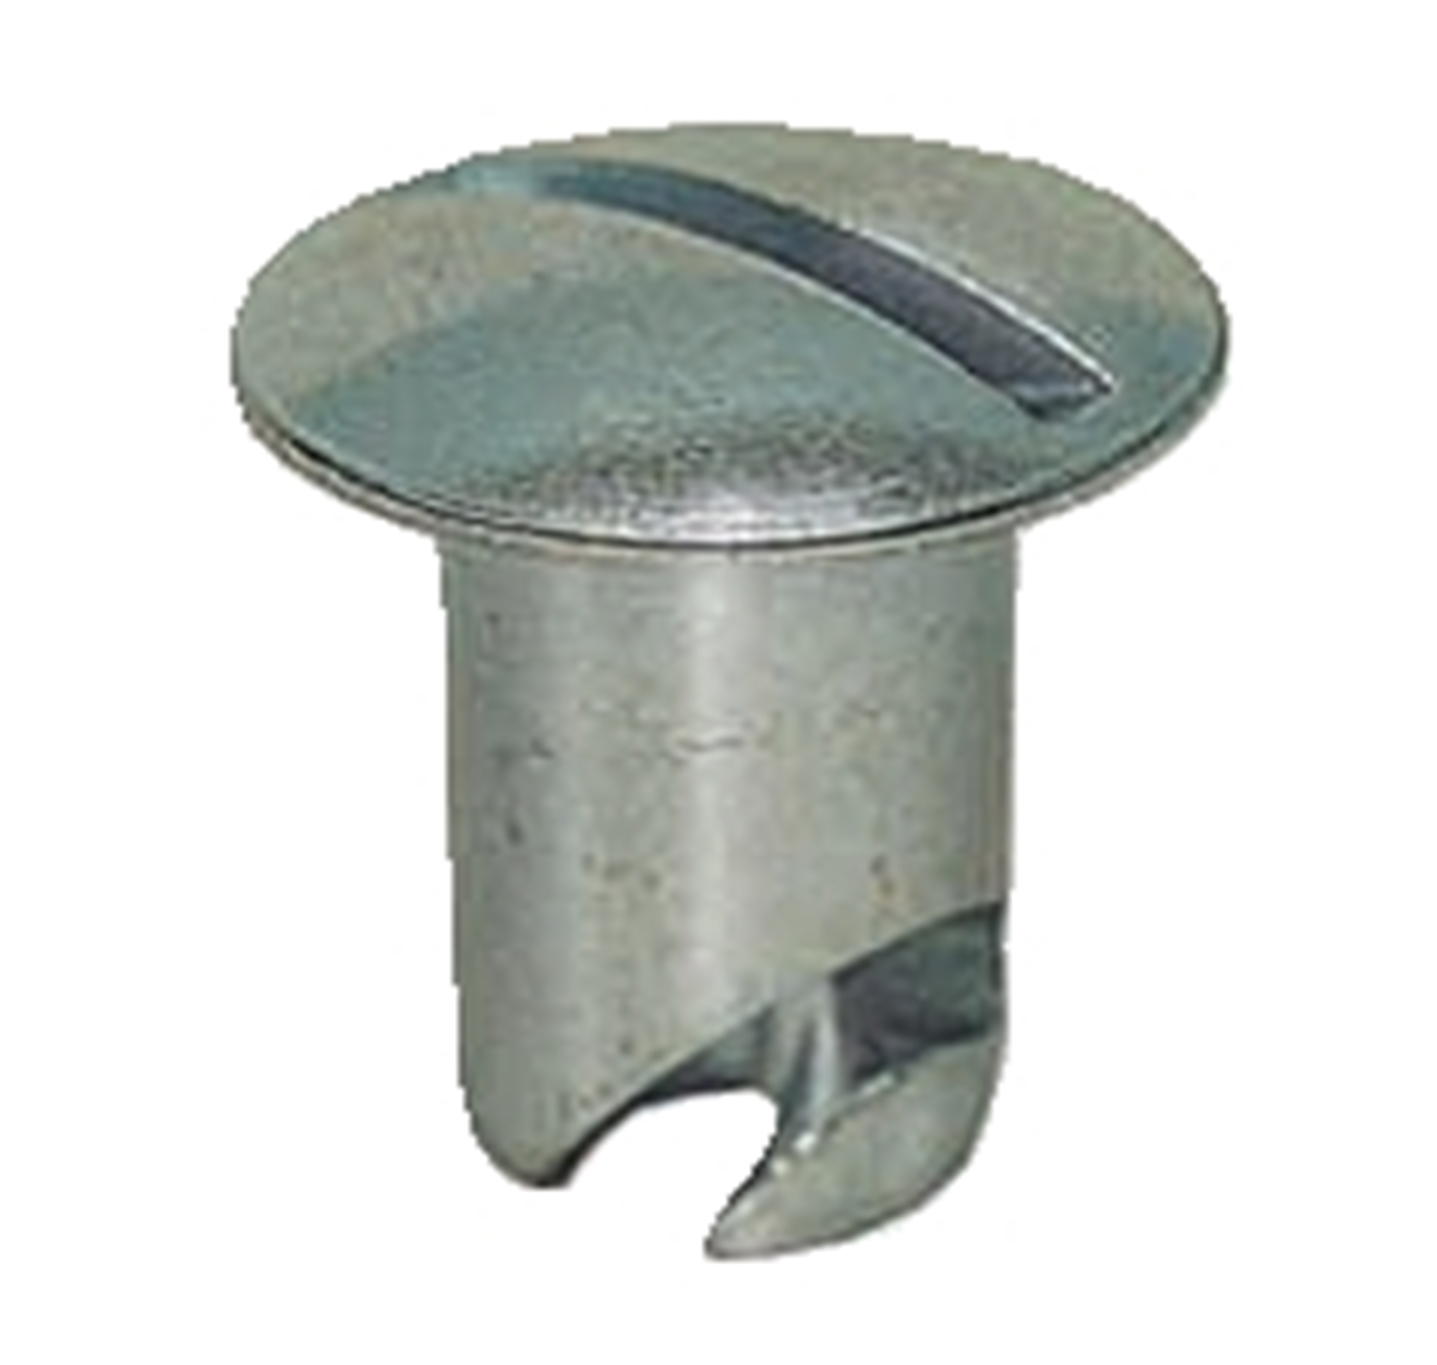 Panelfast 5/16" Aluminum Oval Head .450" Grip